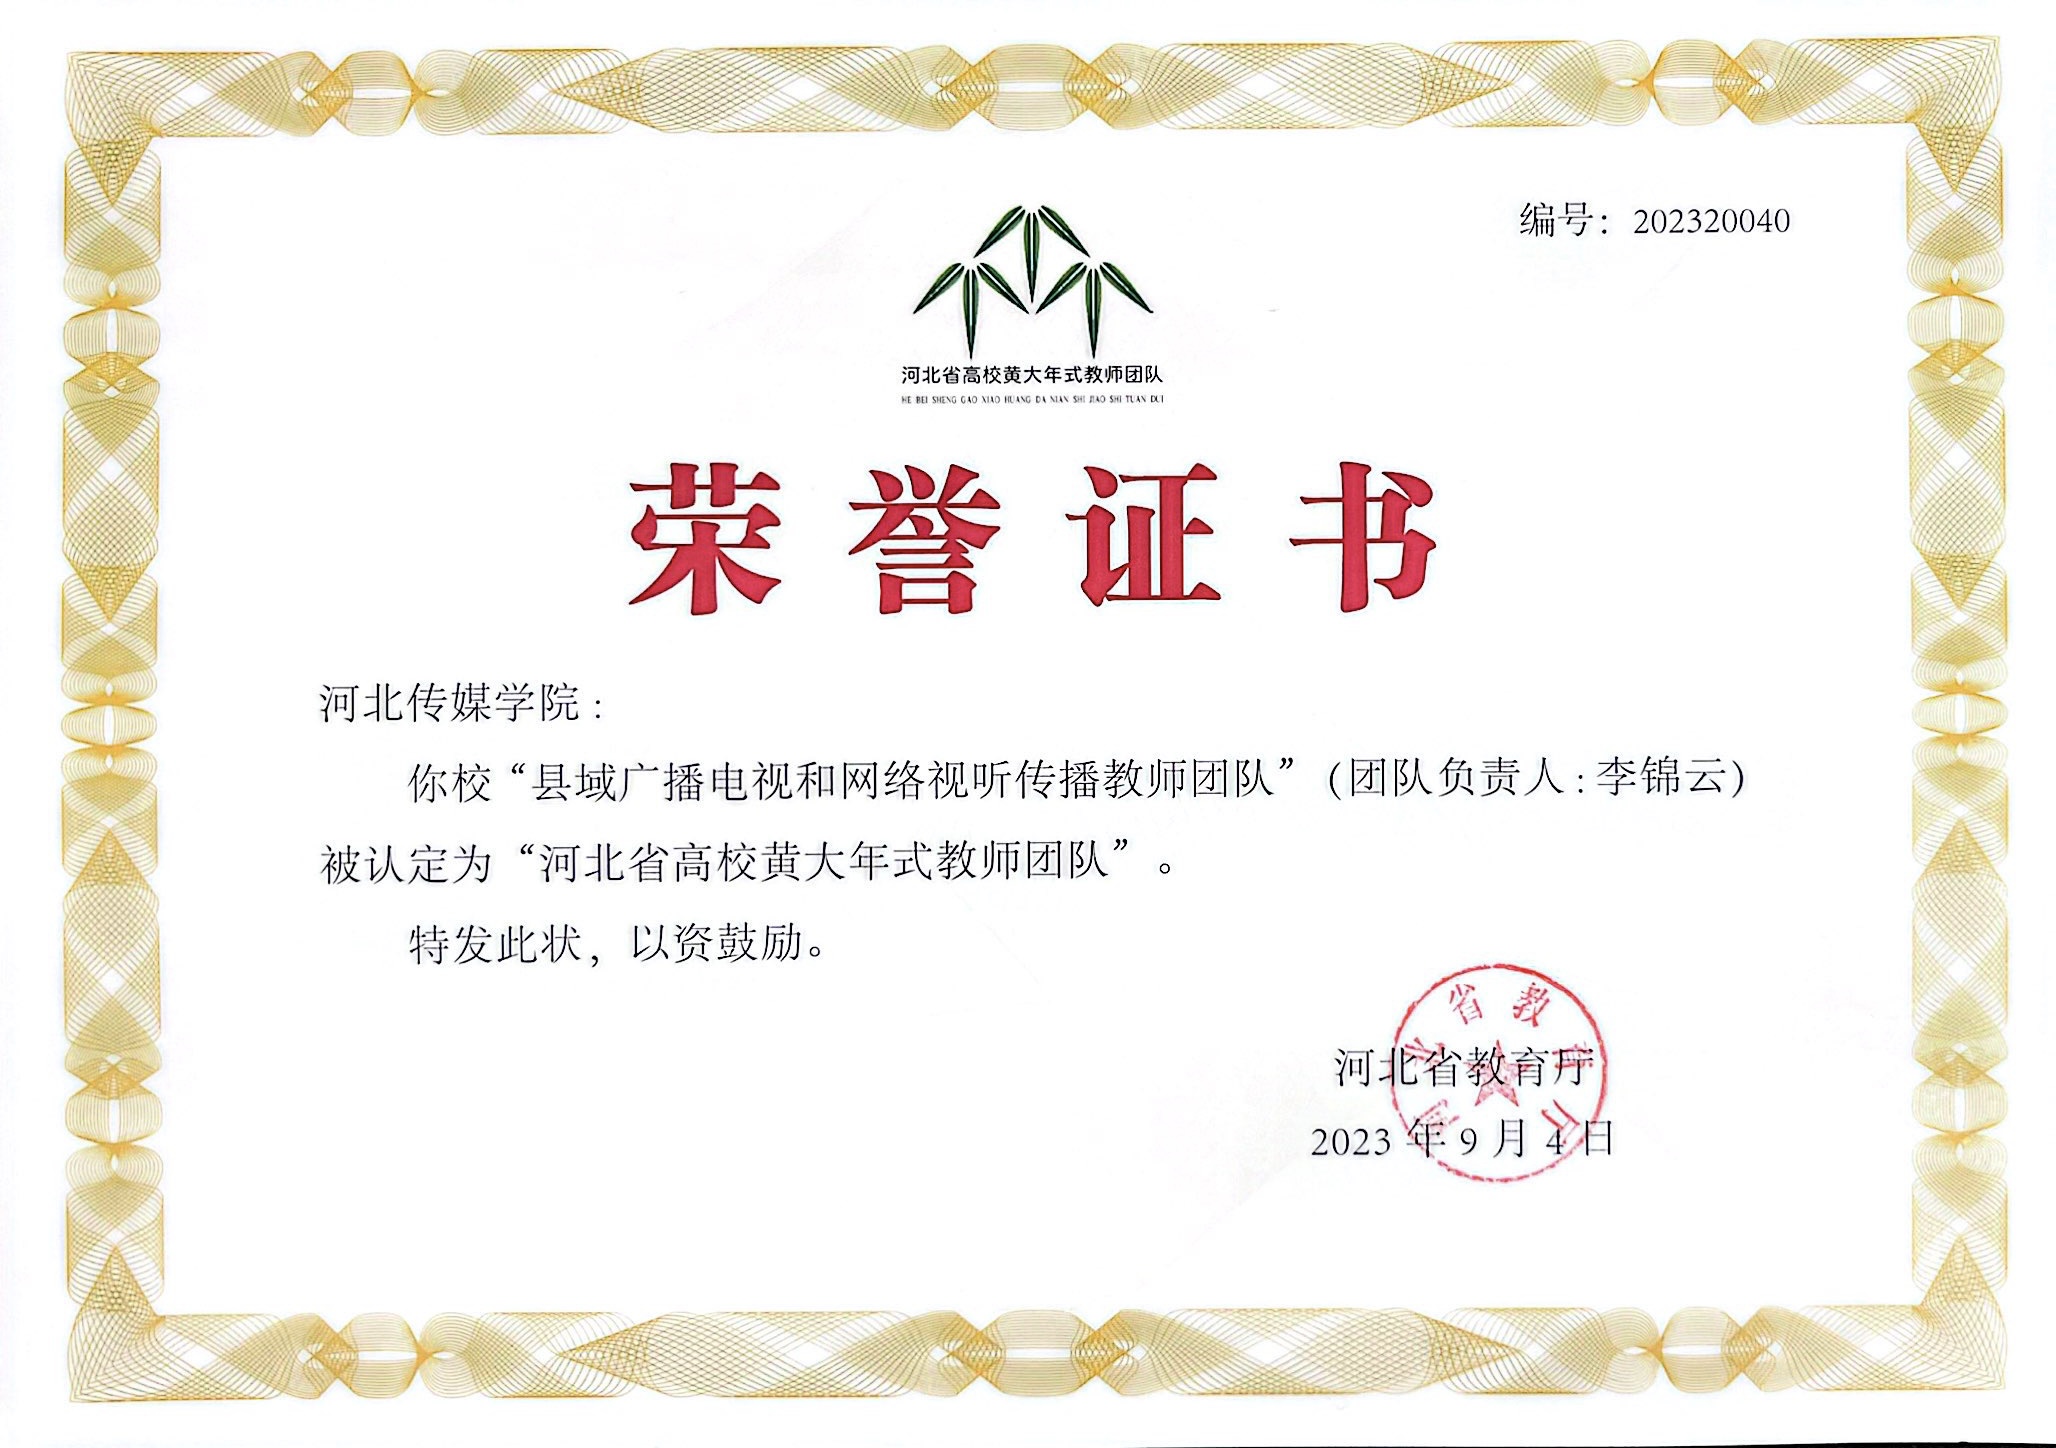 祝贺！李锦云校长领衔的教师团队入选首批“河北省高校黄大年式教师团队”